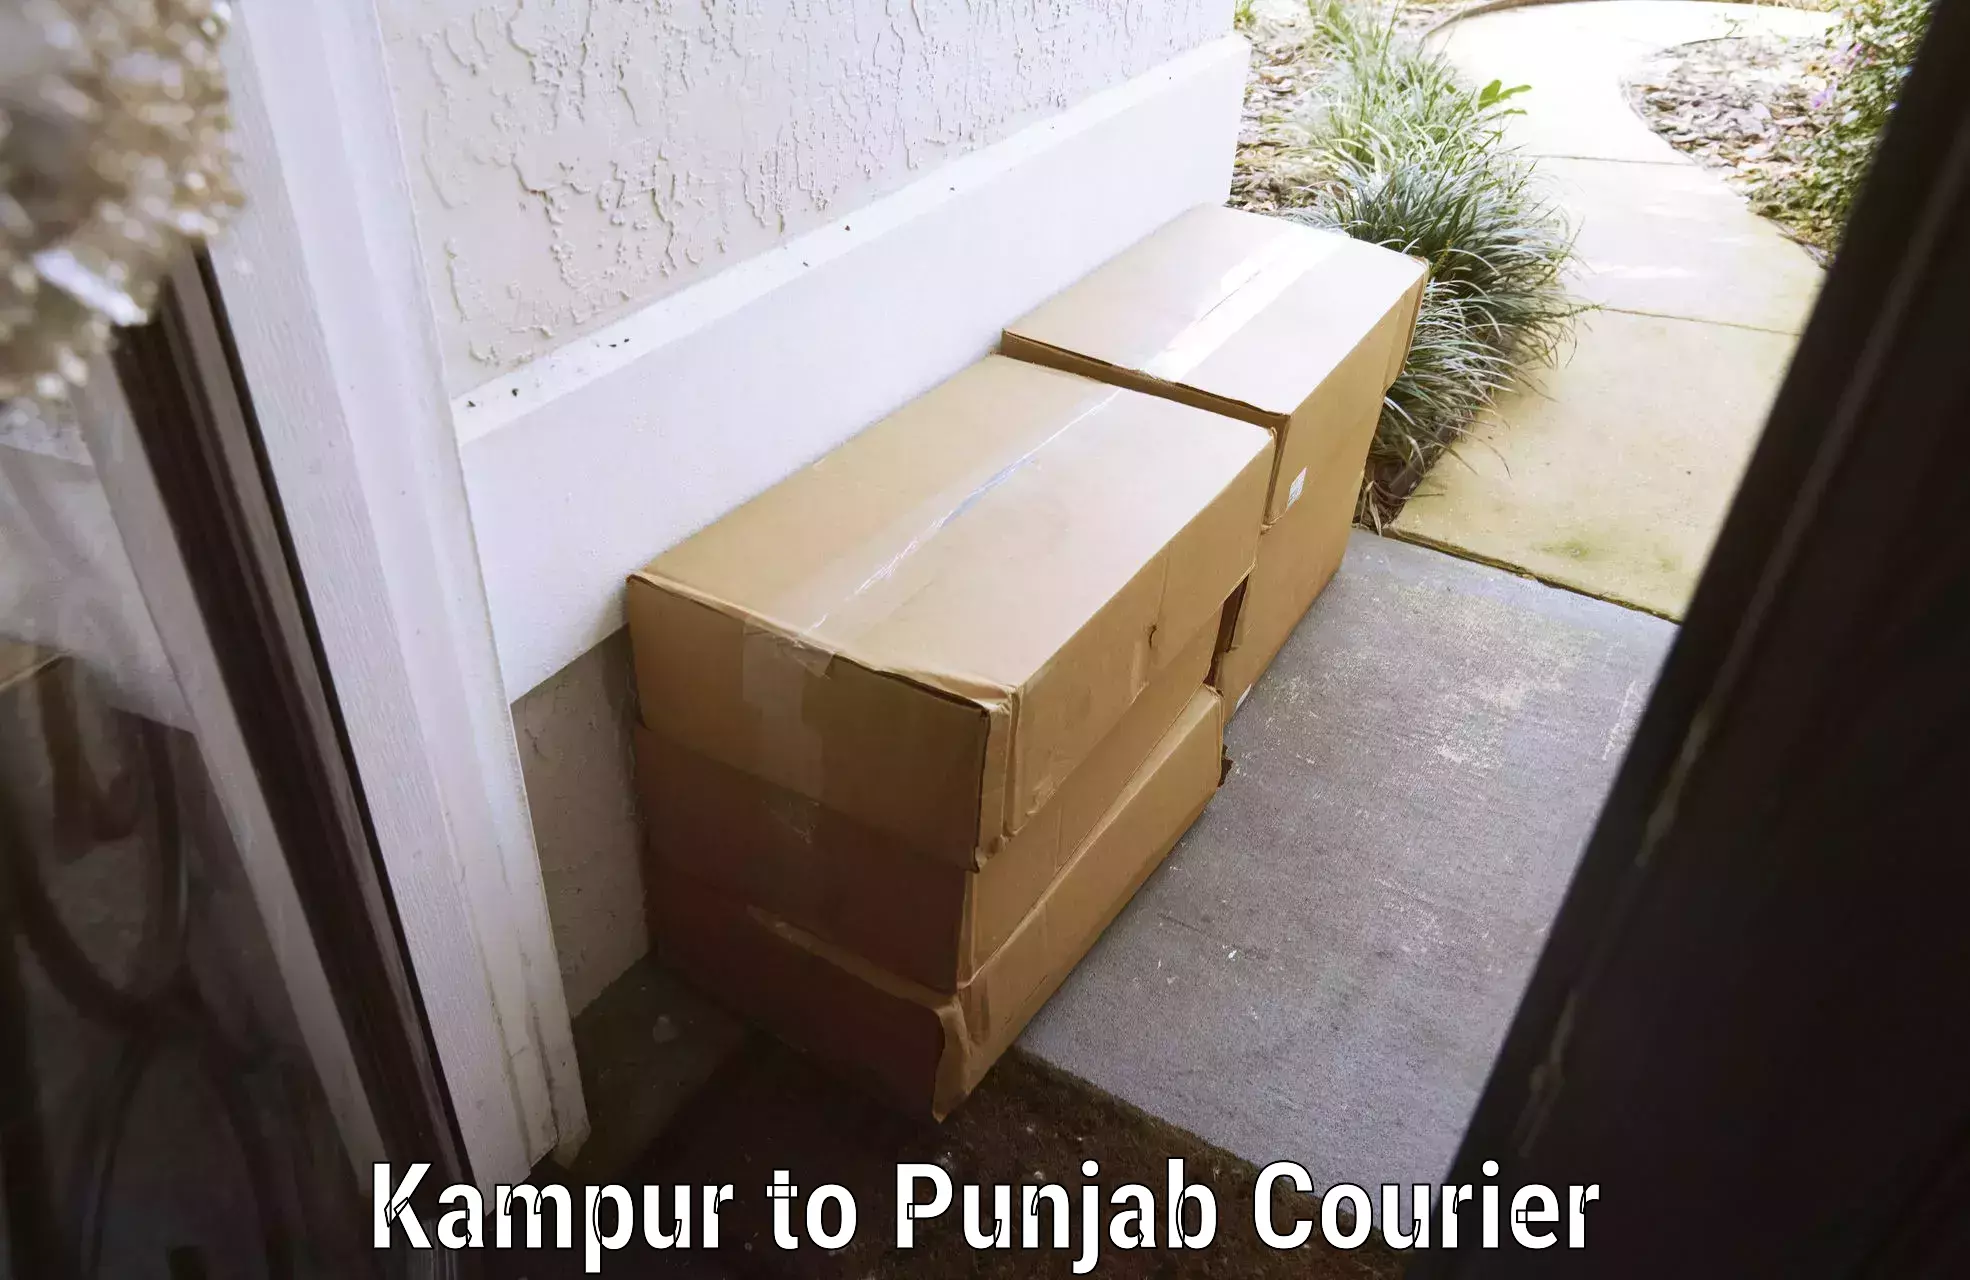 Luggage shipment tracking Kampur to Punjab